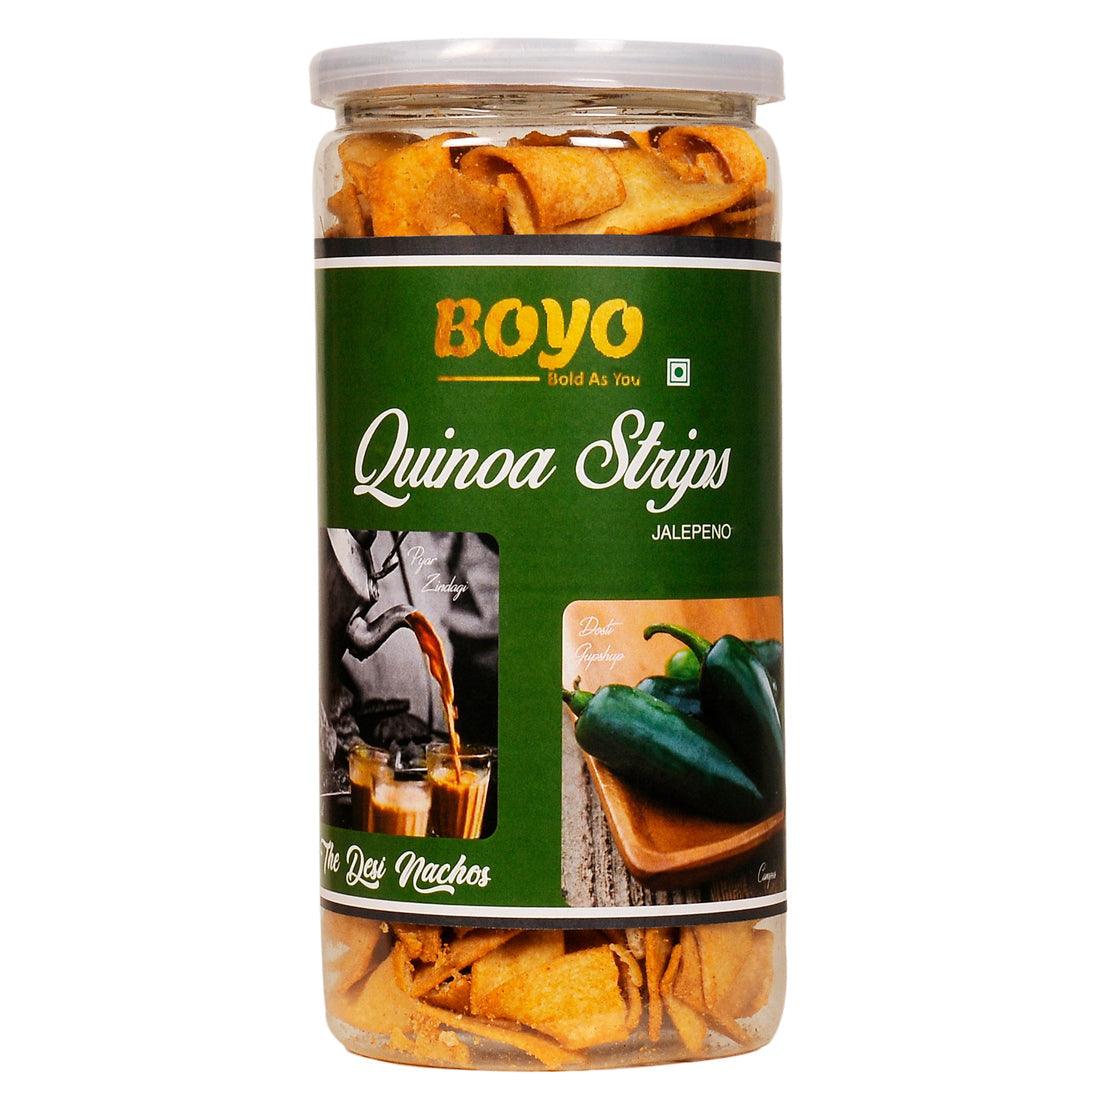 Quinoa strips- Jalapeno (24 Units) - BoYo